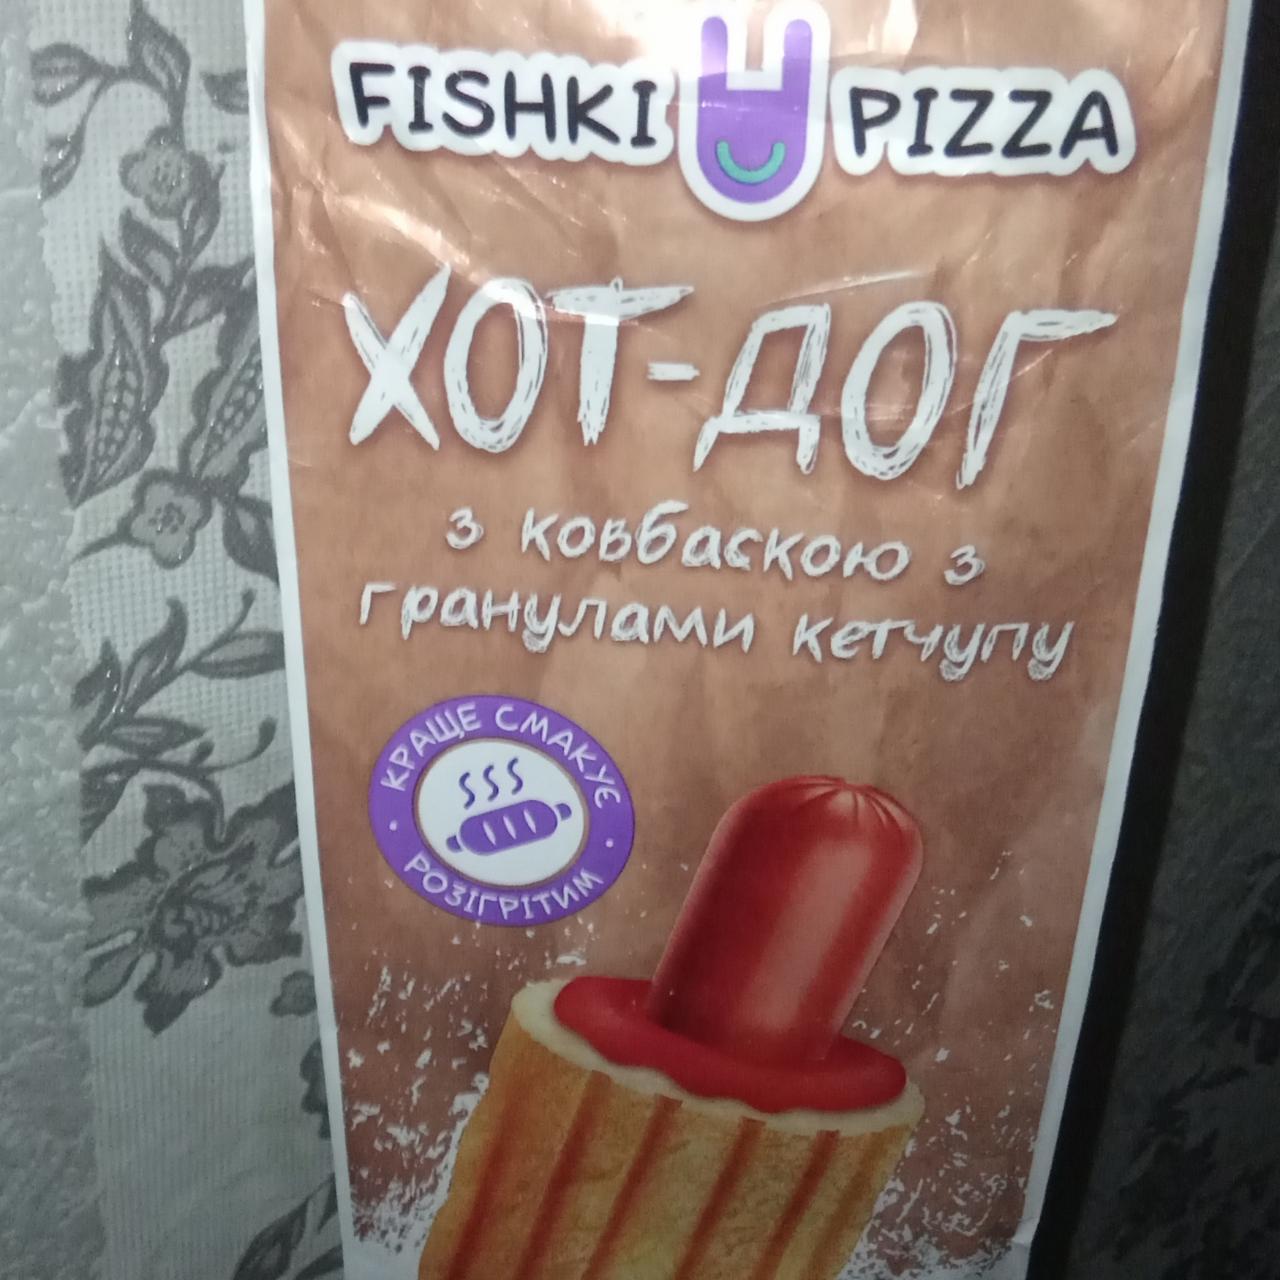 Фото - Хот-дог с колбаской с гранулами кетчупа Fishki Pizza